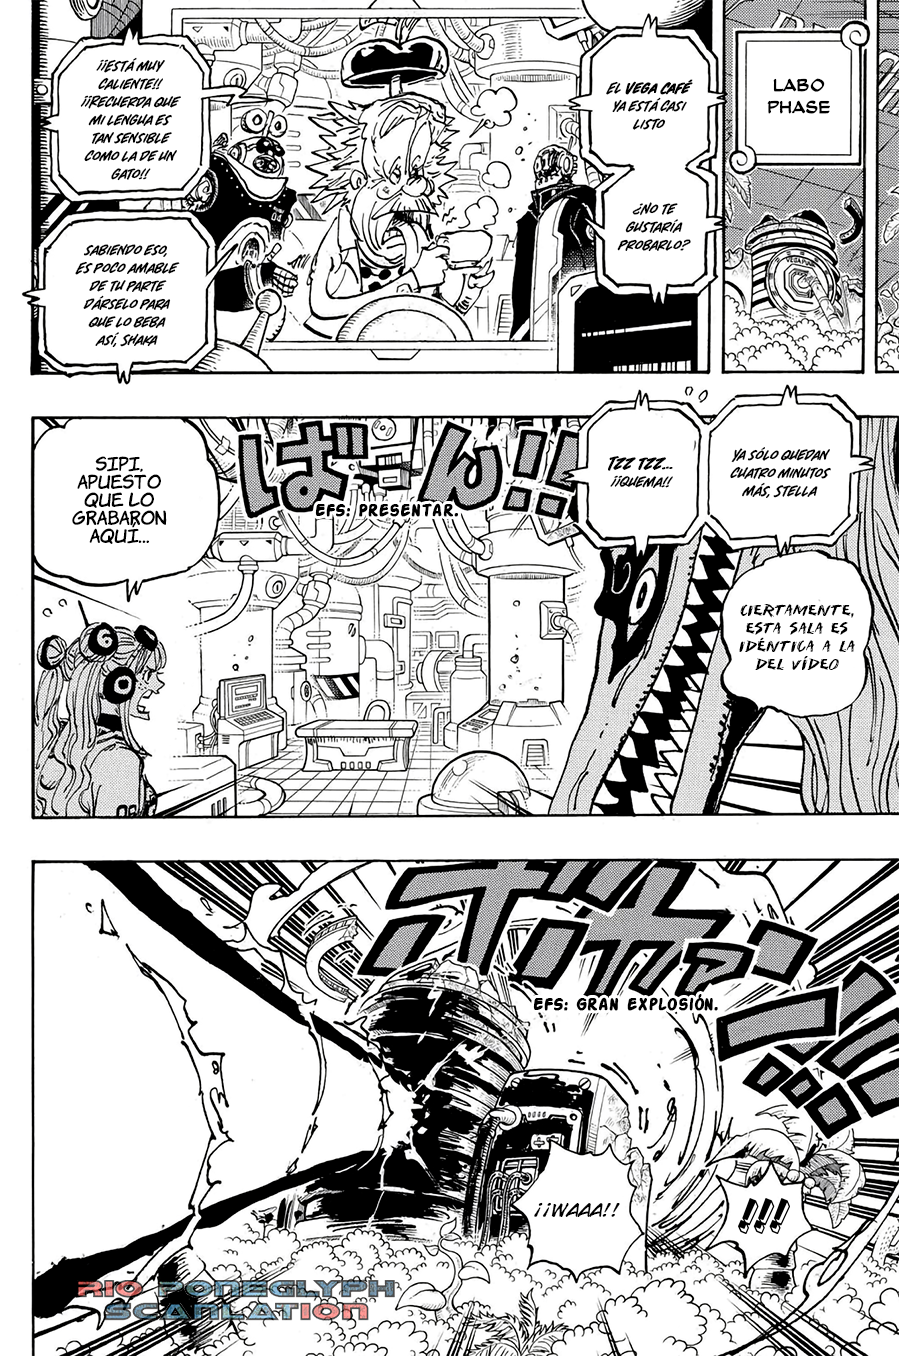 español - One Piece Manga 1112 [Español] [Rio Poneglyph Scans] 05-2